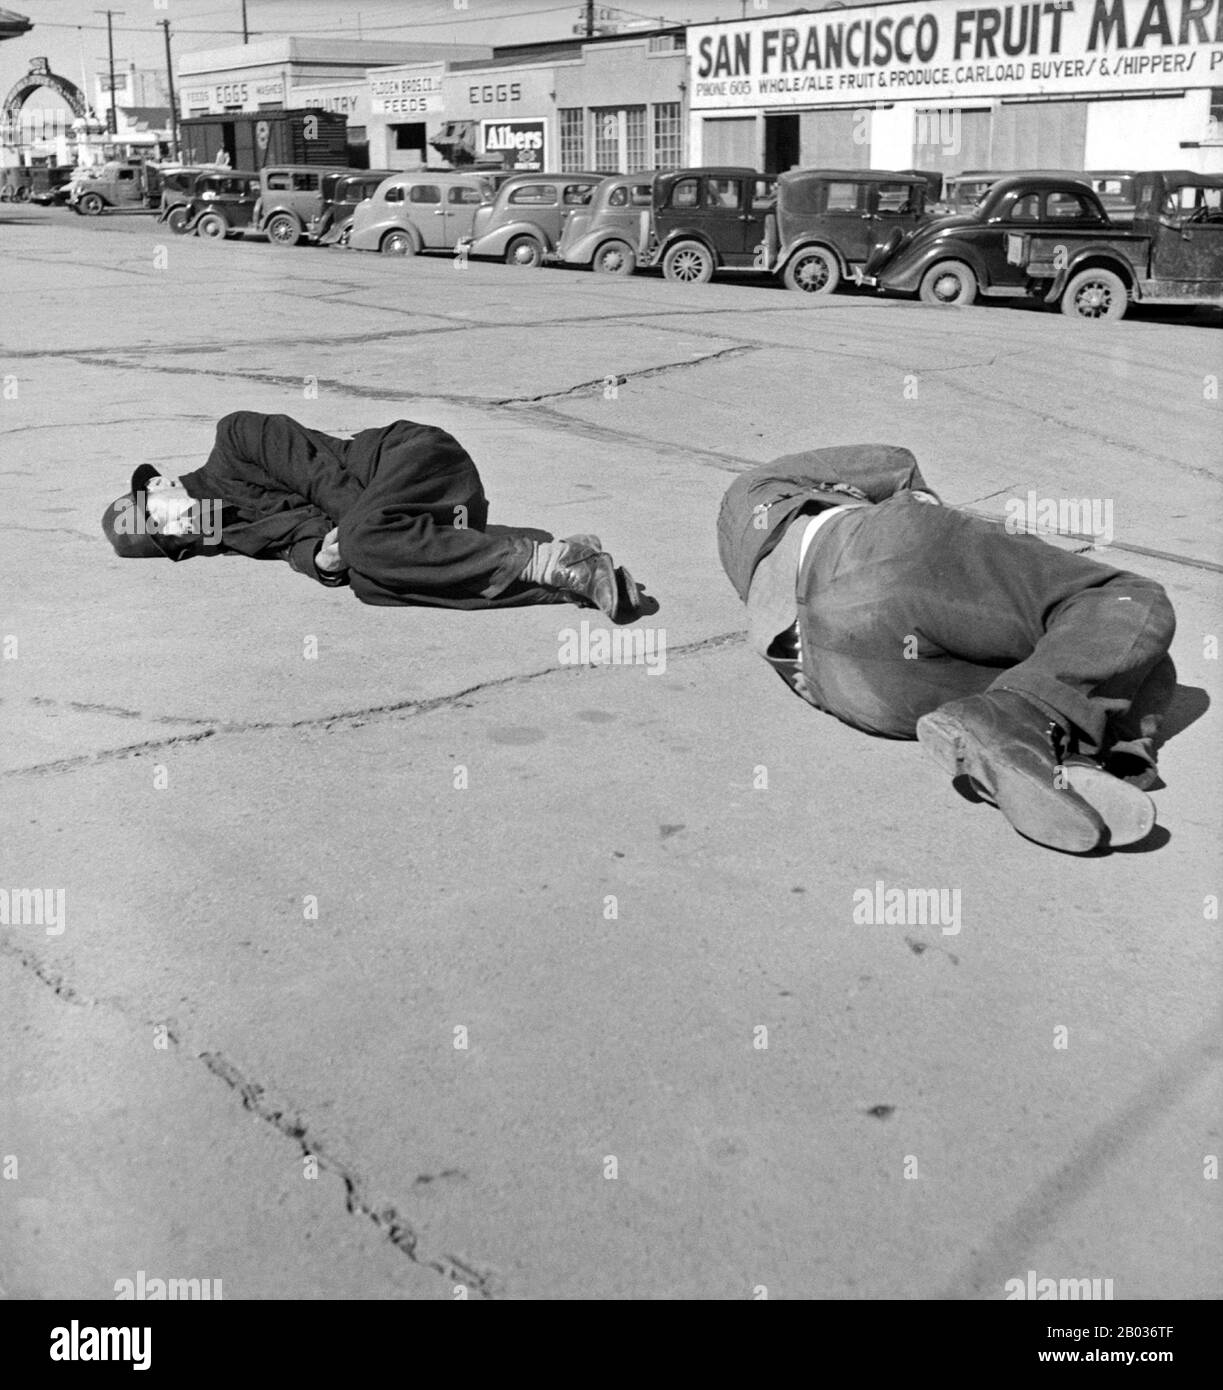 Dorothea Lange (dal 26 maggio 1895 all'11 ottobre 1965) è stato un fotografo documentario e fotoreporter statunitense, noto per il suo lavoro di depressione per la Farm Security Administration (FSA). Le fotografie di Lange umanizzarono le conseguenze della Grande depressione e influenzarono lo sviluppo della fotografia documentaria. Foto Stock